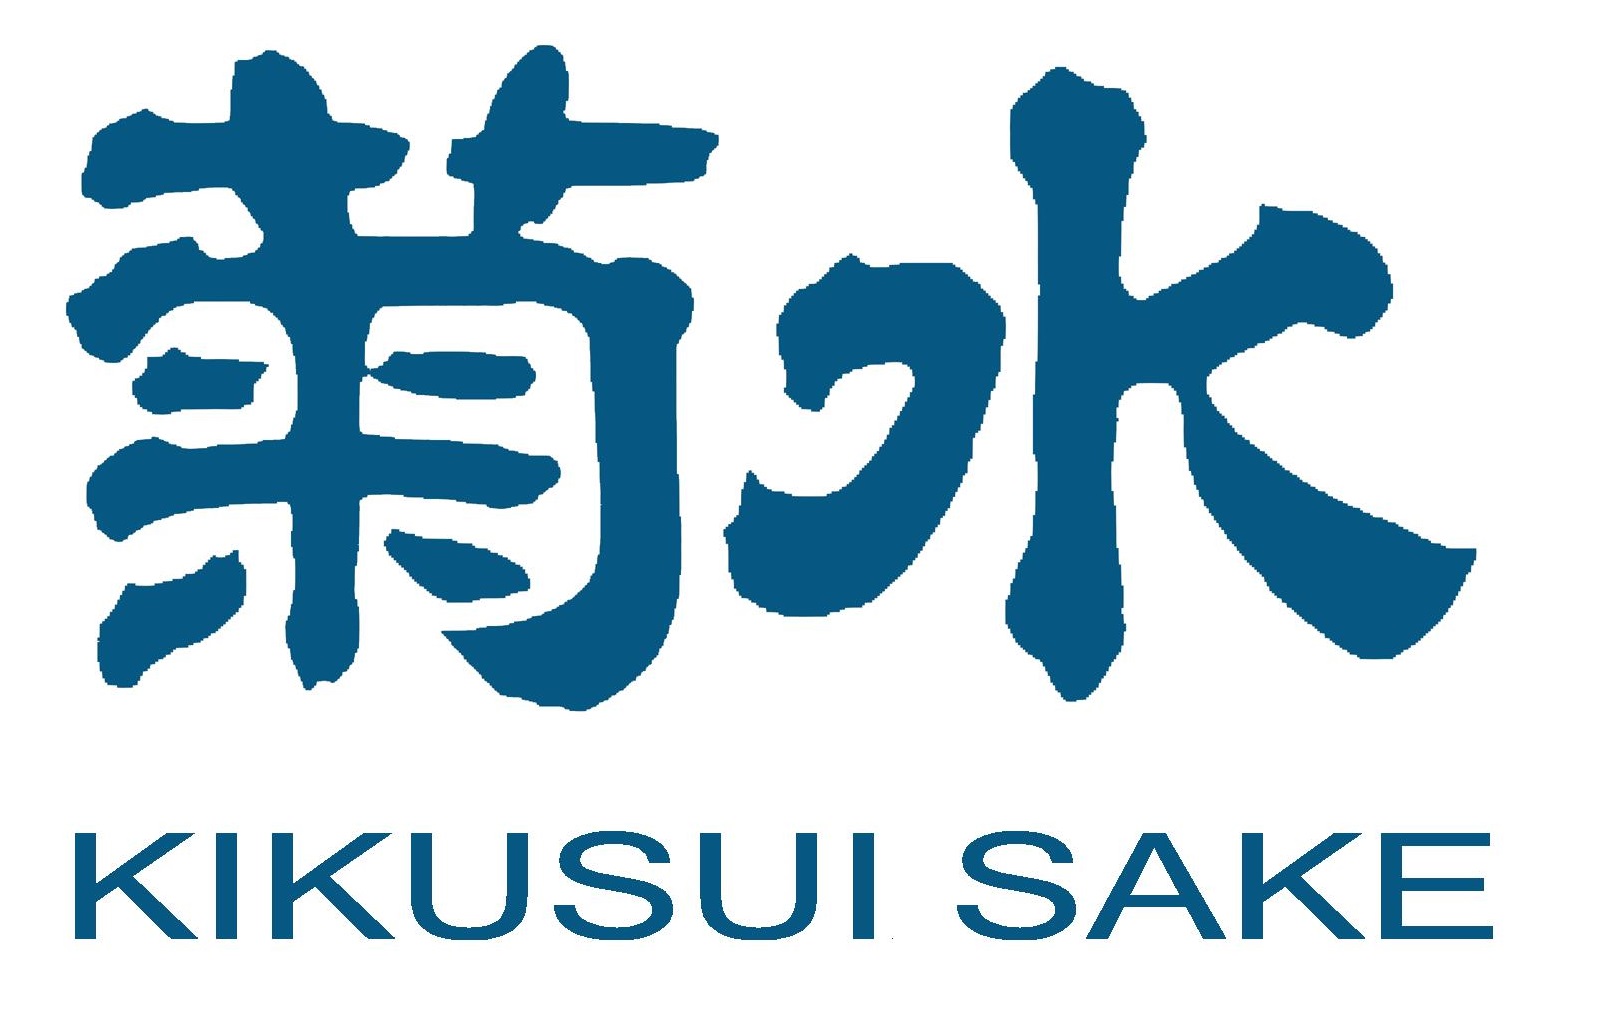 Kikusui logo.jpg